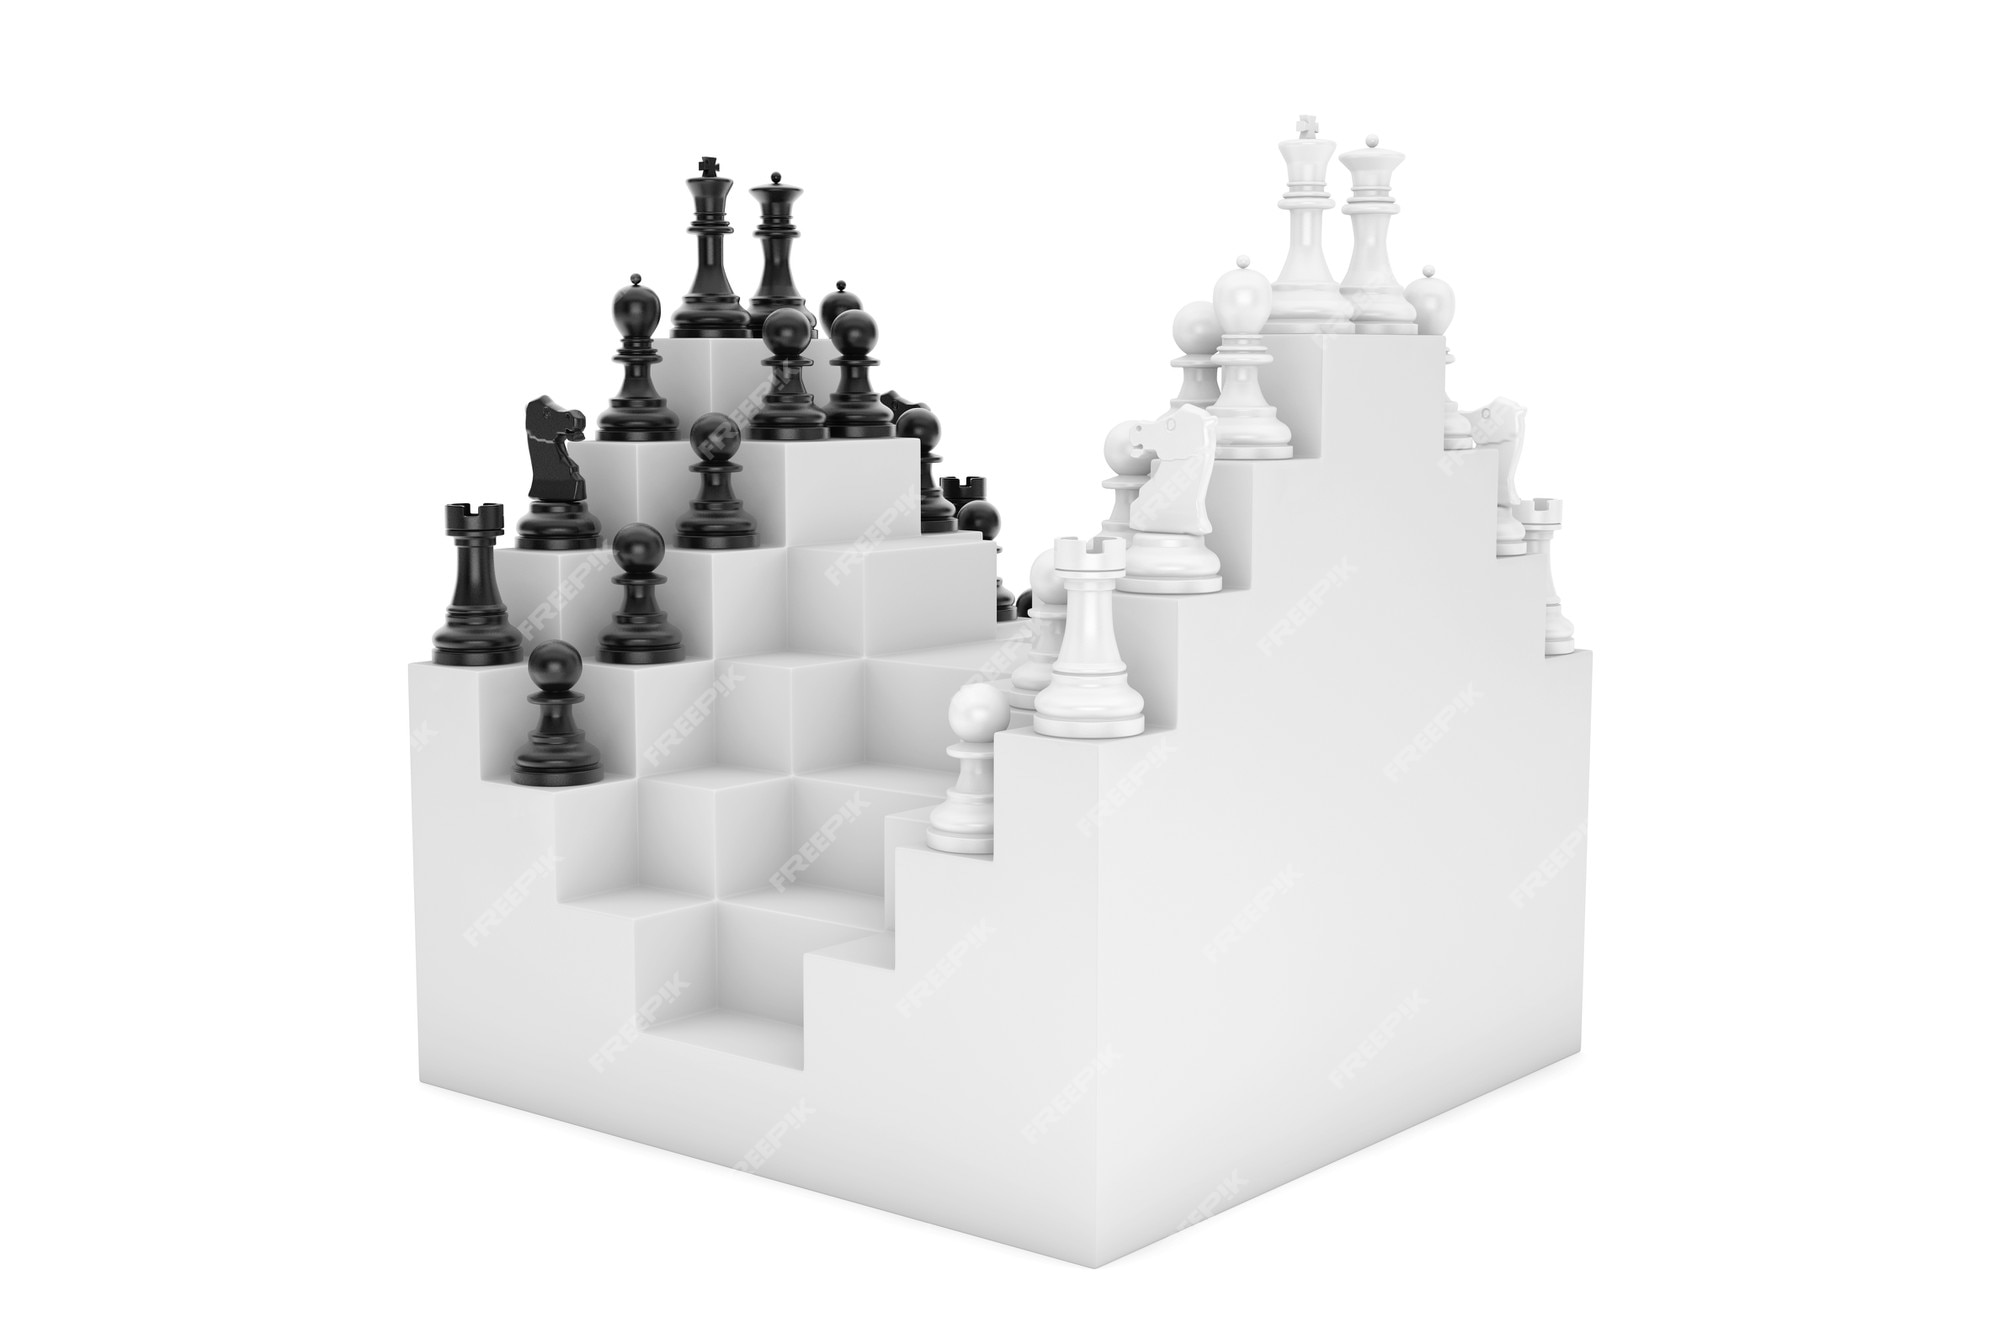 Cabeçalho De Verificação Preto E Branco. Textura Quadrada Abstrata Simples  Do Tabuleiro De Xadrez Ilustração do Vetor - Ilustração de xadrez, moderno:  202391006